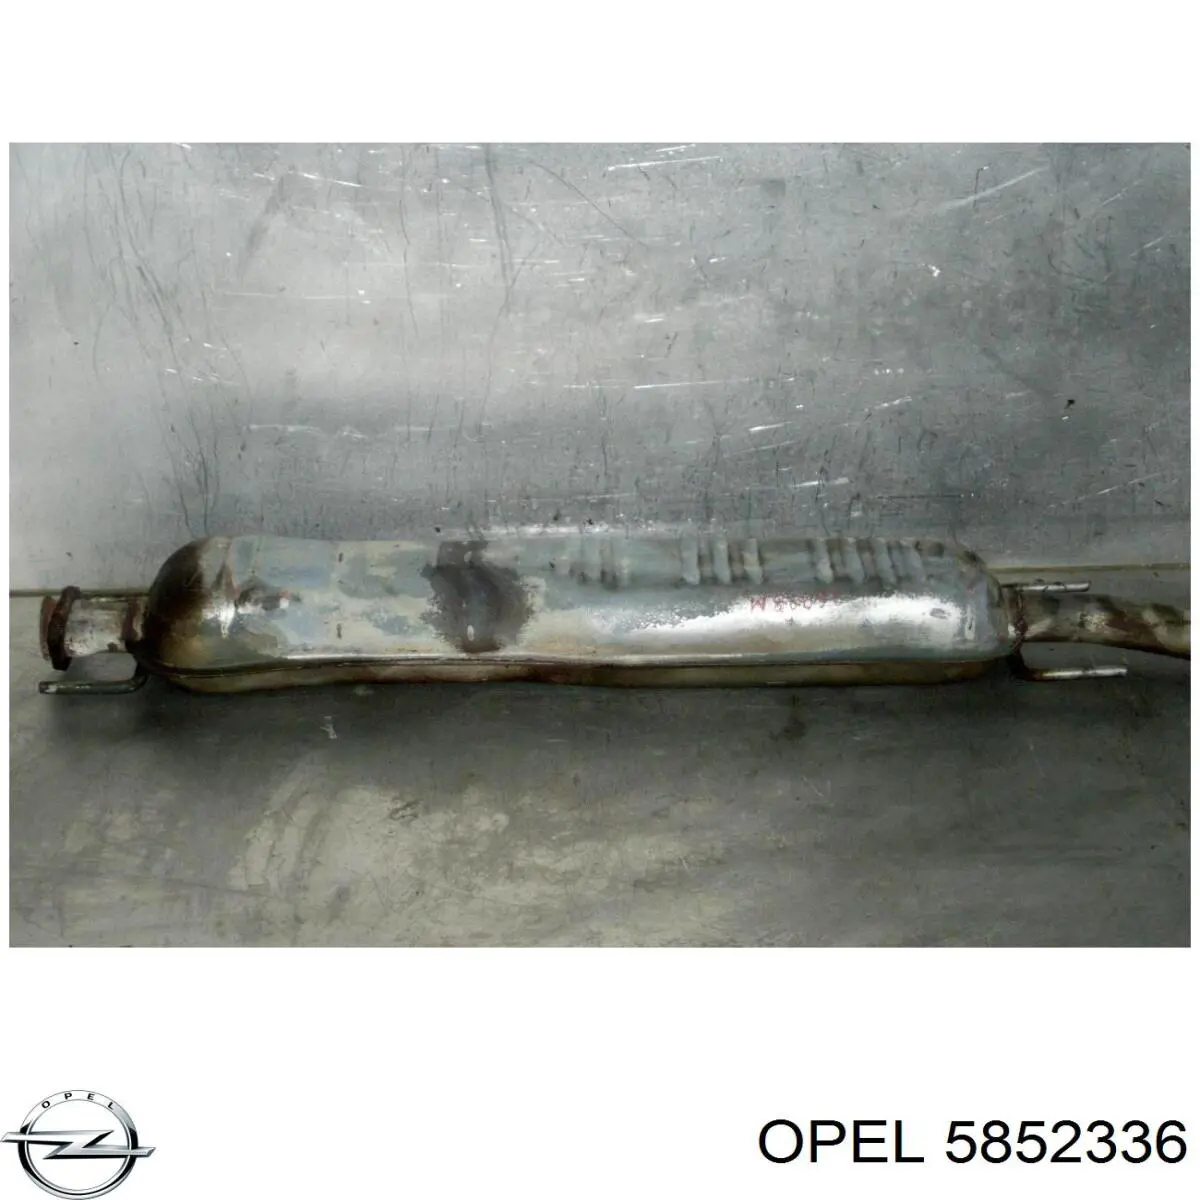 5852336 Opel silenciador del medio